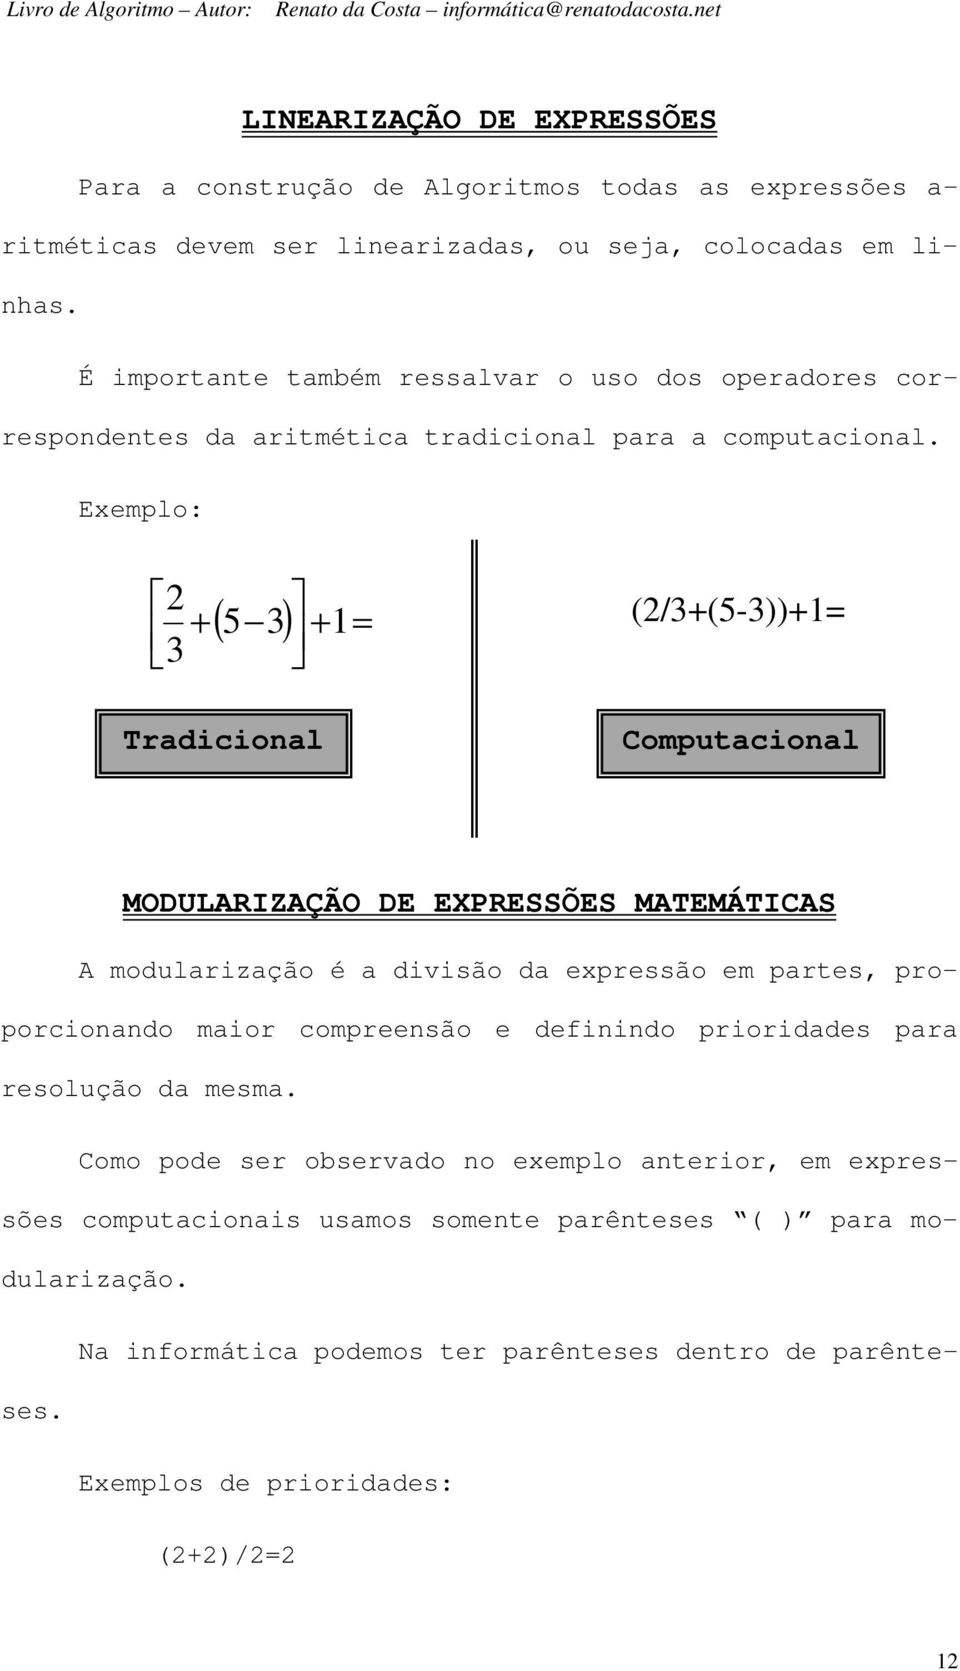 Exemplo: 2 5 3 1 (2/3+(5-3))+1= 3 Tradicional Computacional MODULARIZAÇÃO DE EXPRESSÕES MATEMÁTICAS A modularização é a divisão da expressão em partes, proporcionando maior